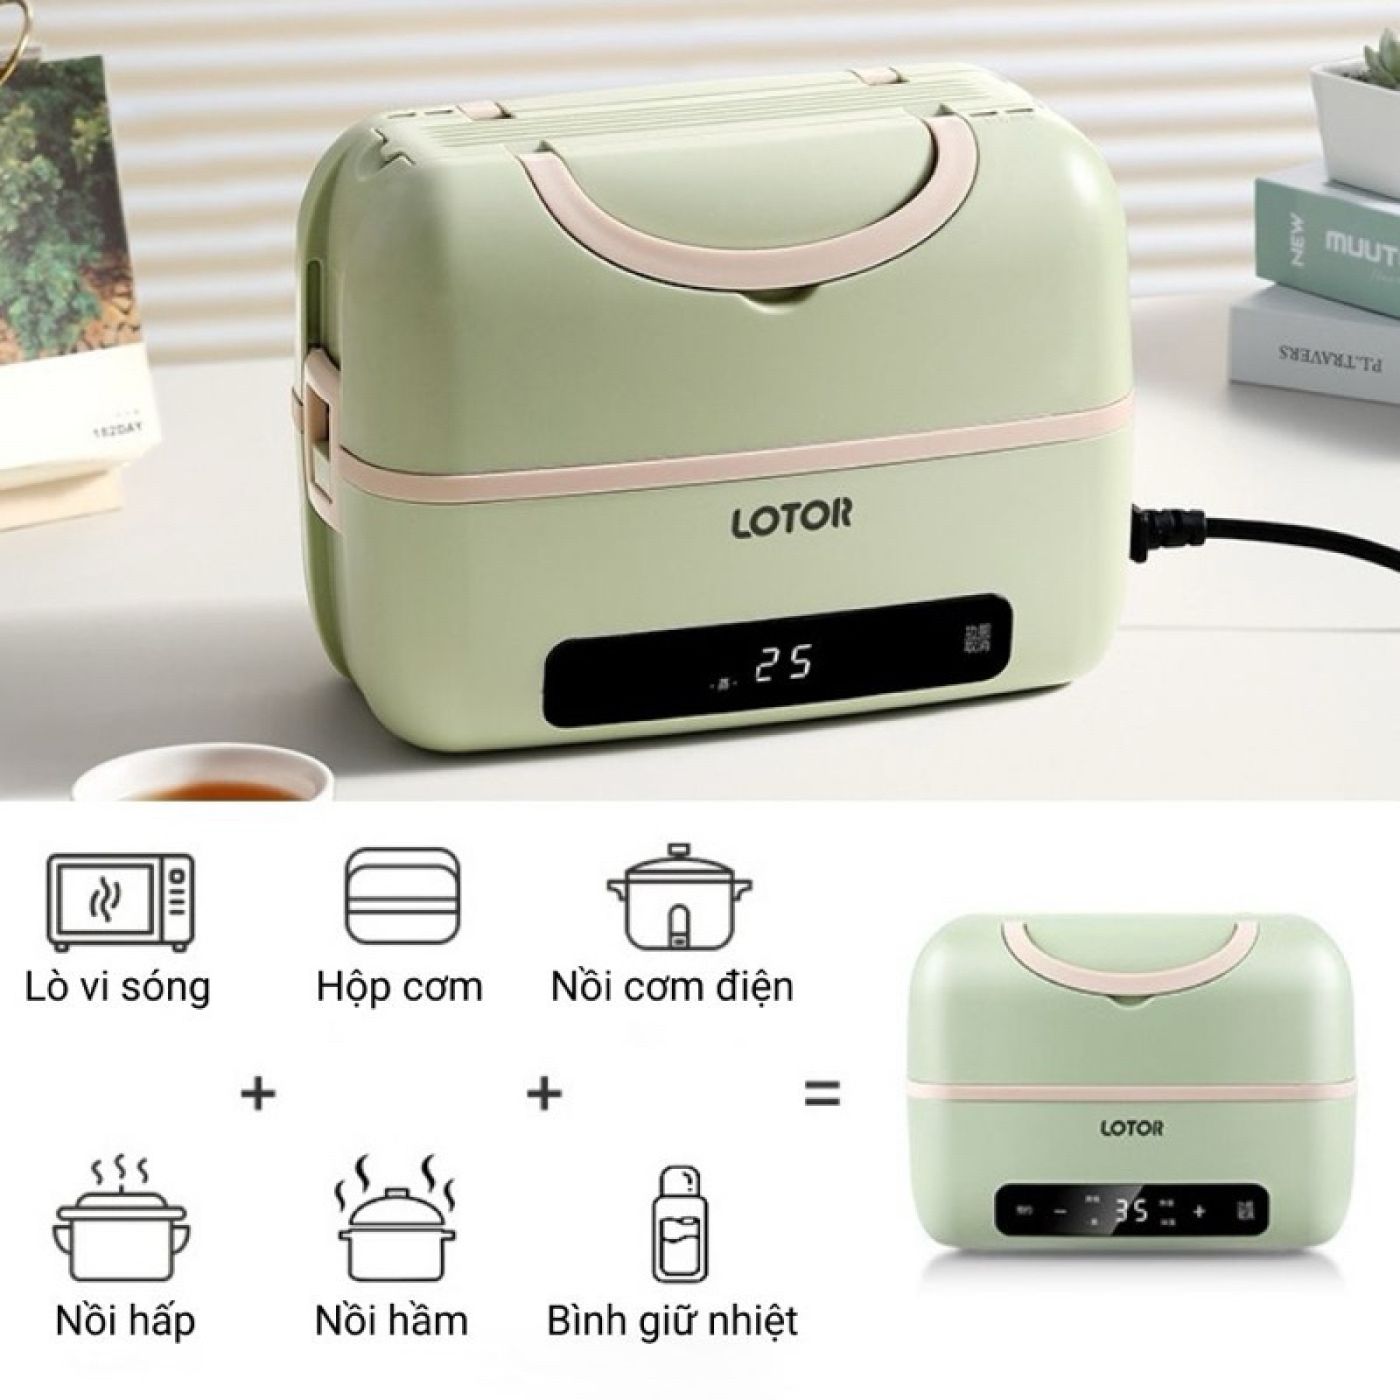 Nồi cơm di động cắm điện Lotor Portable Cooking Electric Lunch Box BE-FH998